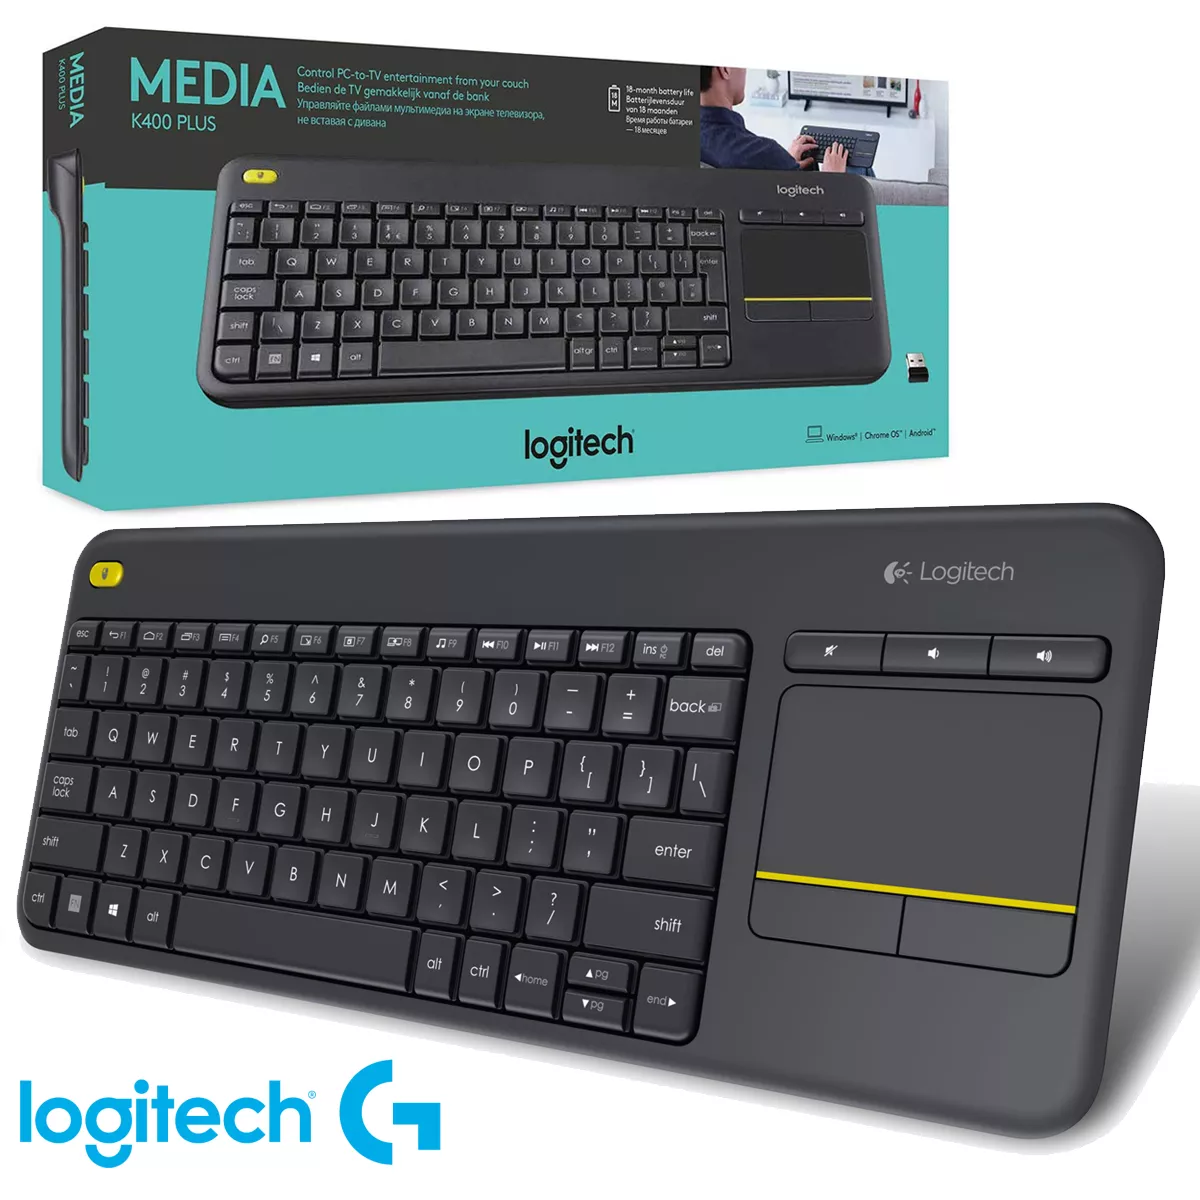 Teclado Logitech K400 plus Wireless touchpad español